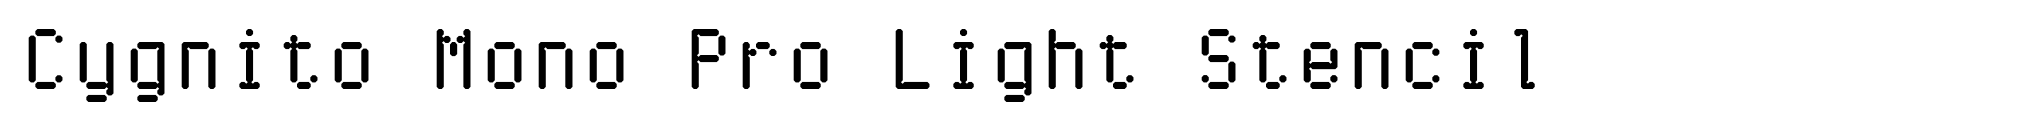 Cygnito Mono Pro Light Stencil image